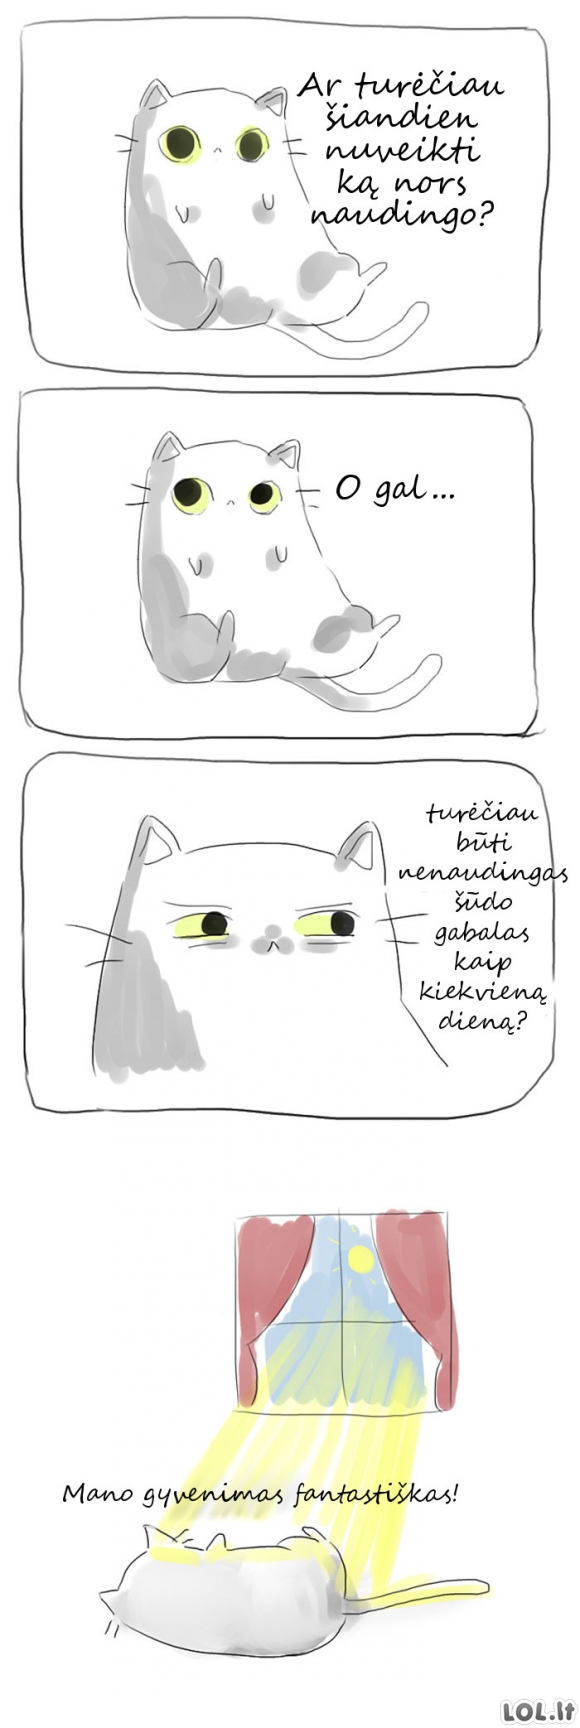 Vienintelė dilema kačių gyvenime